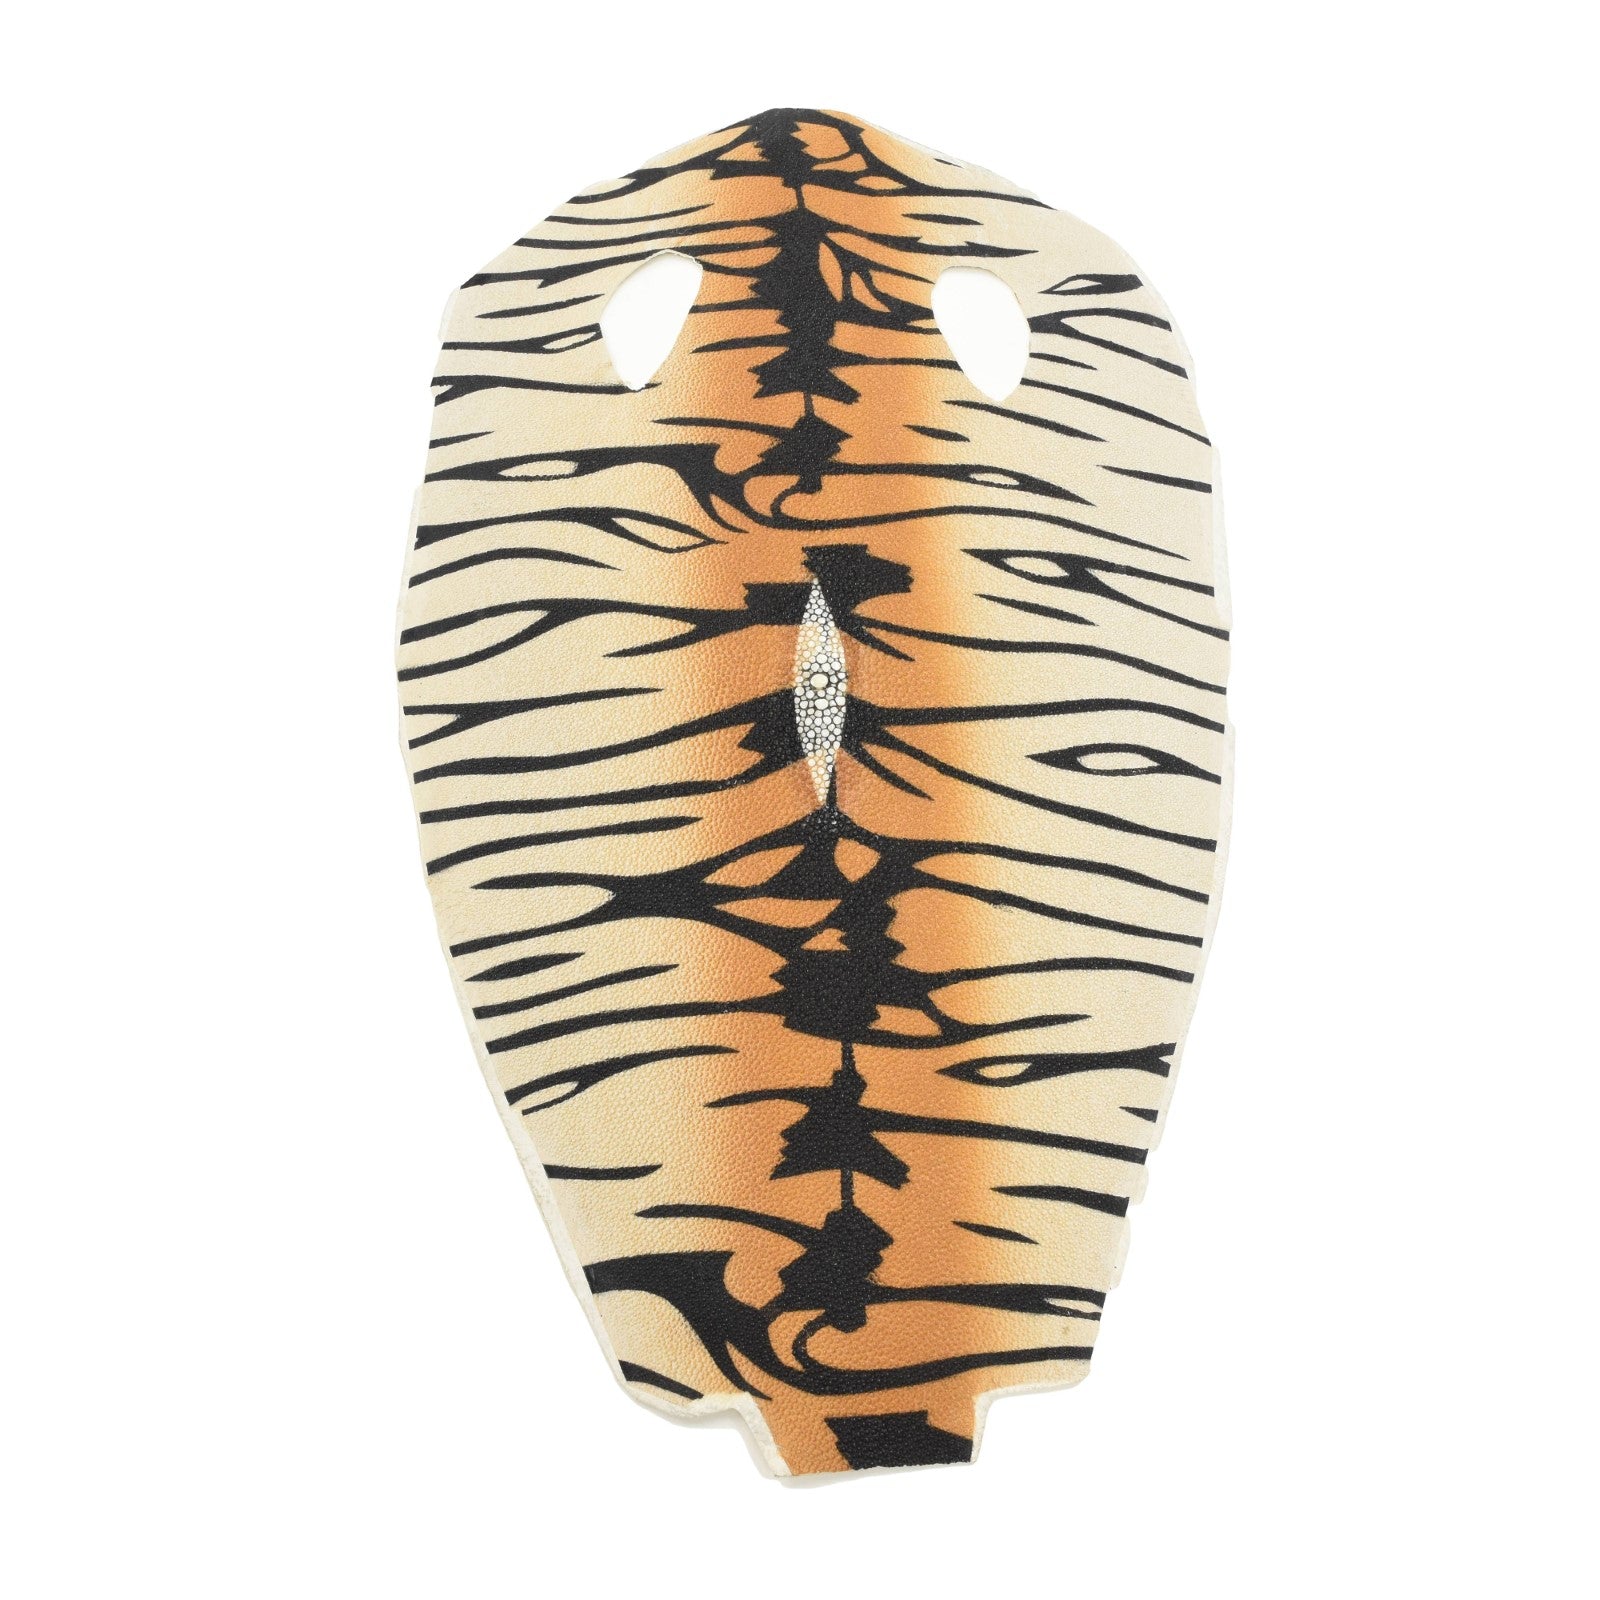 Tiger Striped Stingray Skins, 15" x 9", 3-4 oz, Tiger Stripe Orange | The Leather Guy